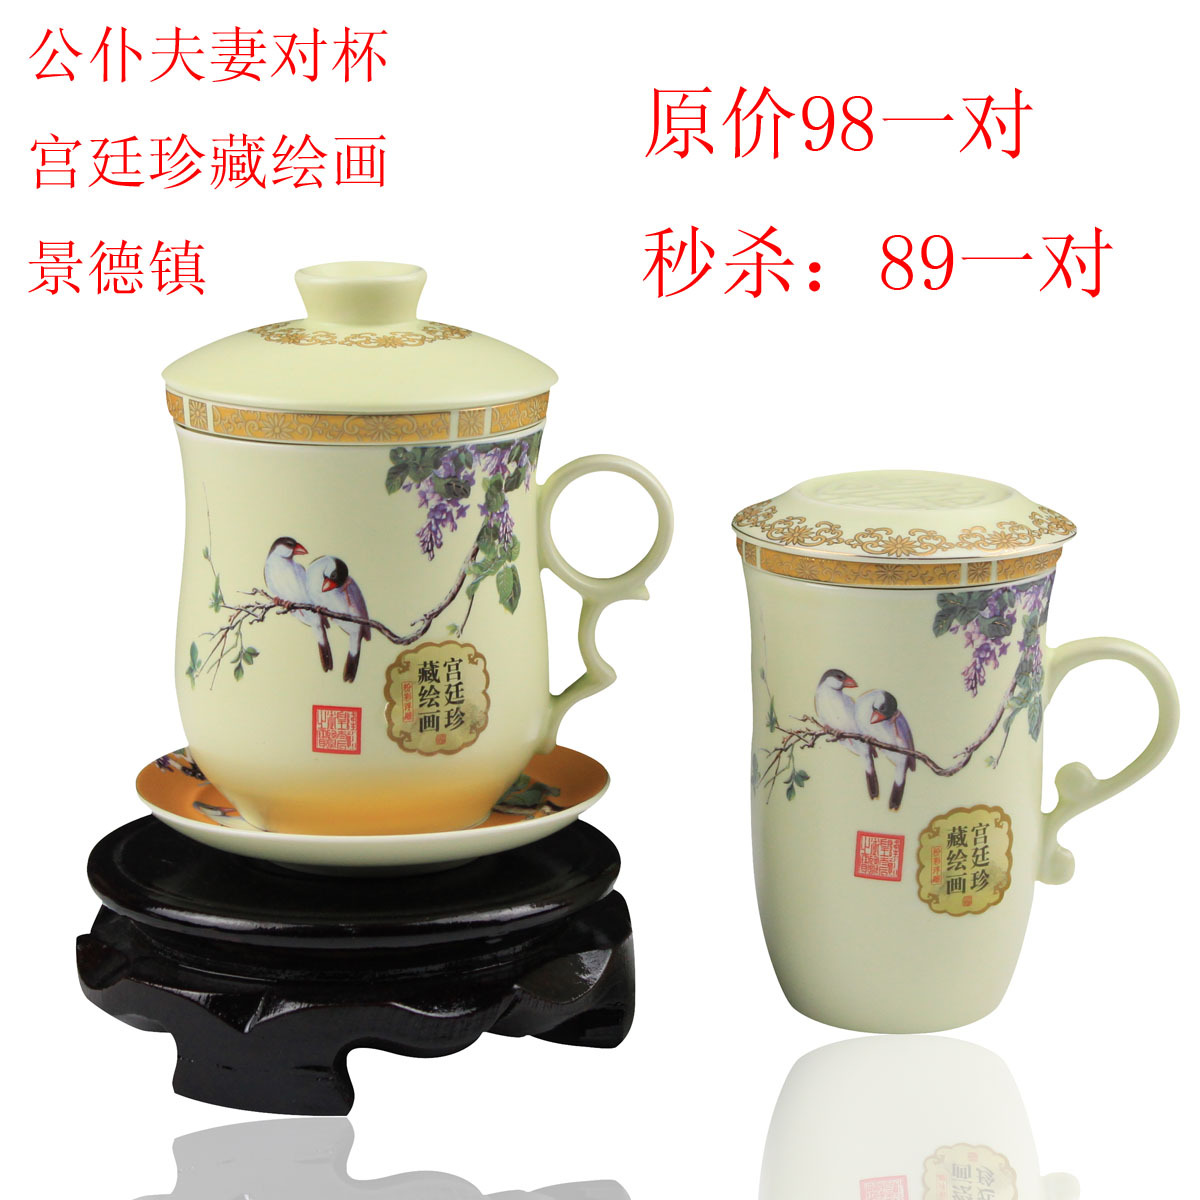 公仆杯 可单卖 景德镇陶瓷茶具 泡茶杯 情侣夫妻对杯鸟语花香